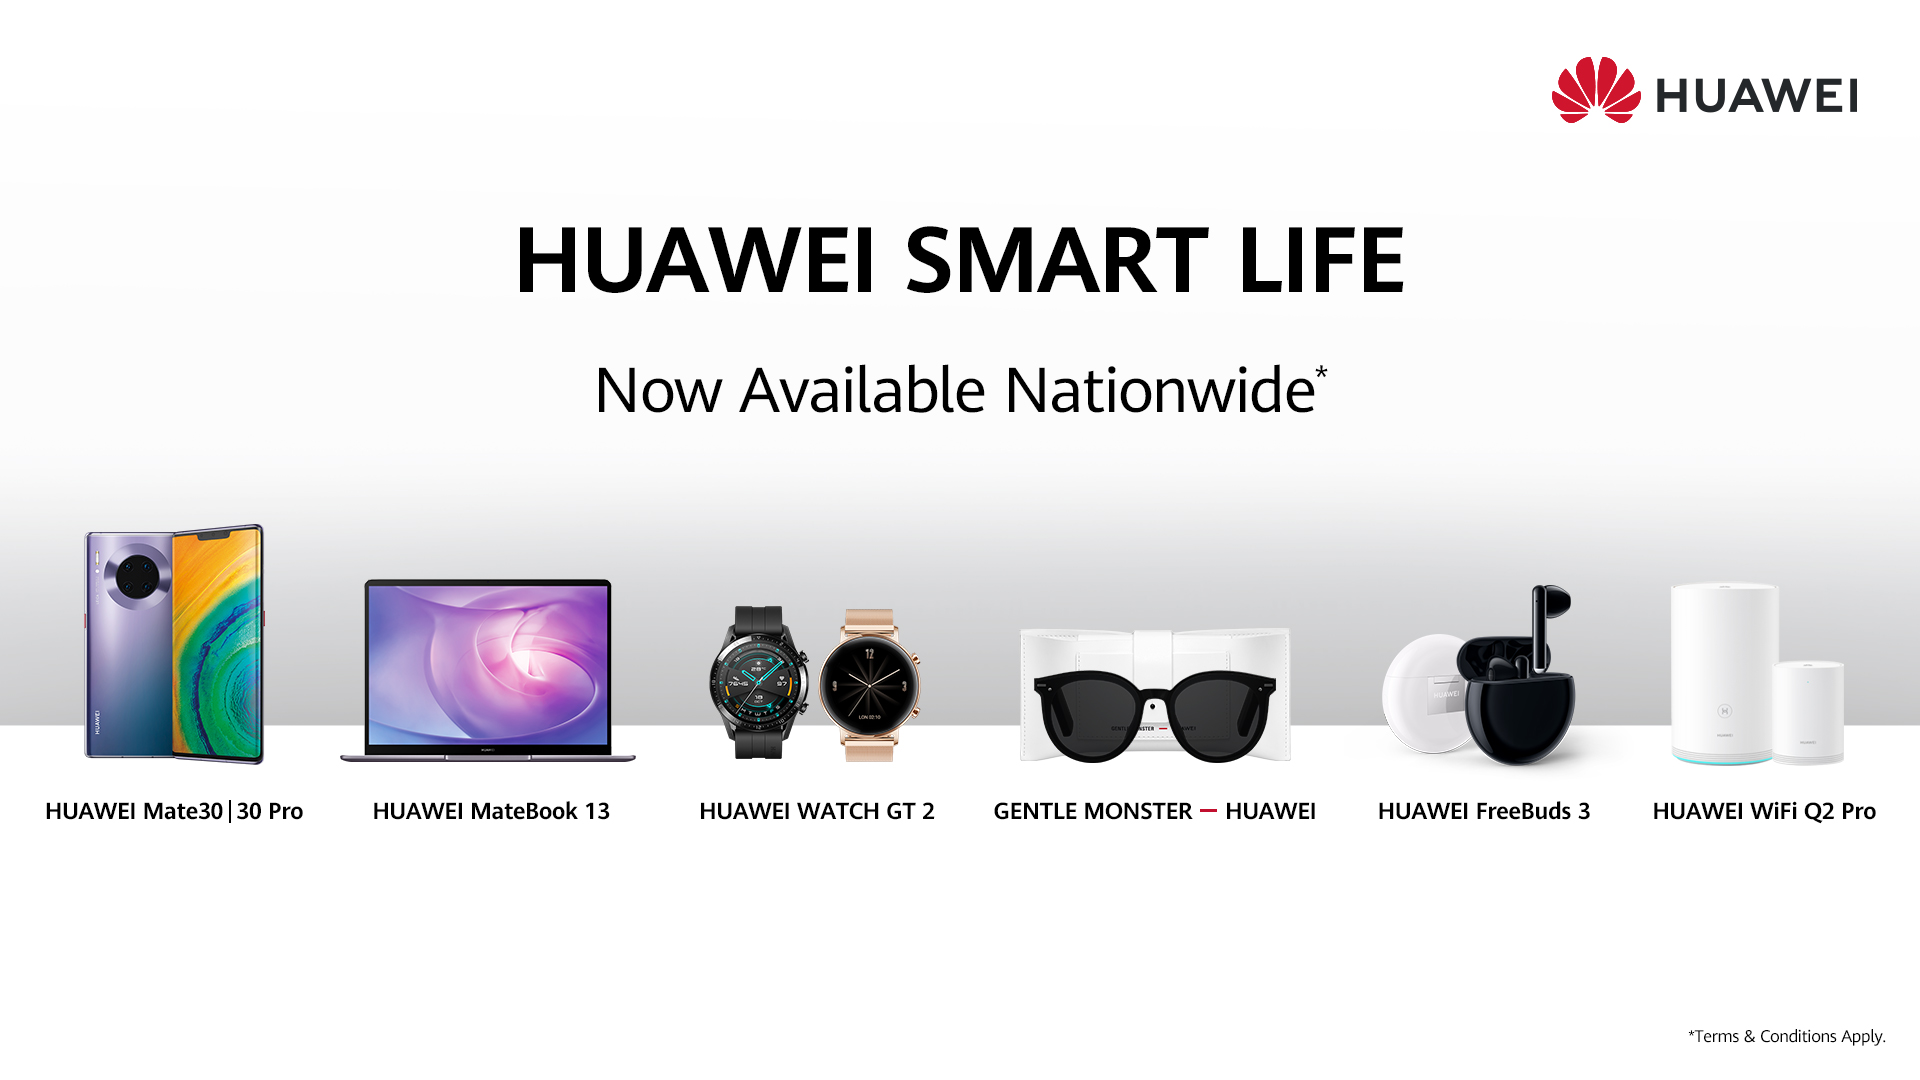 https://www.soyacincau.com/wp-content/uploads/2019/11/191129-Huawei-Smart-Life-English.jpg